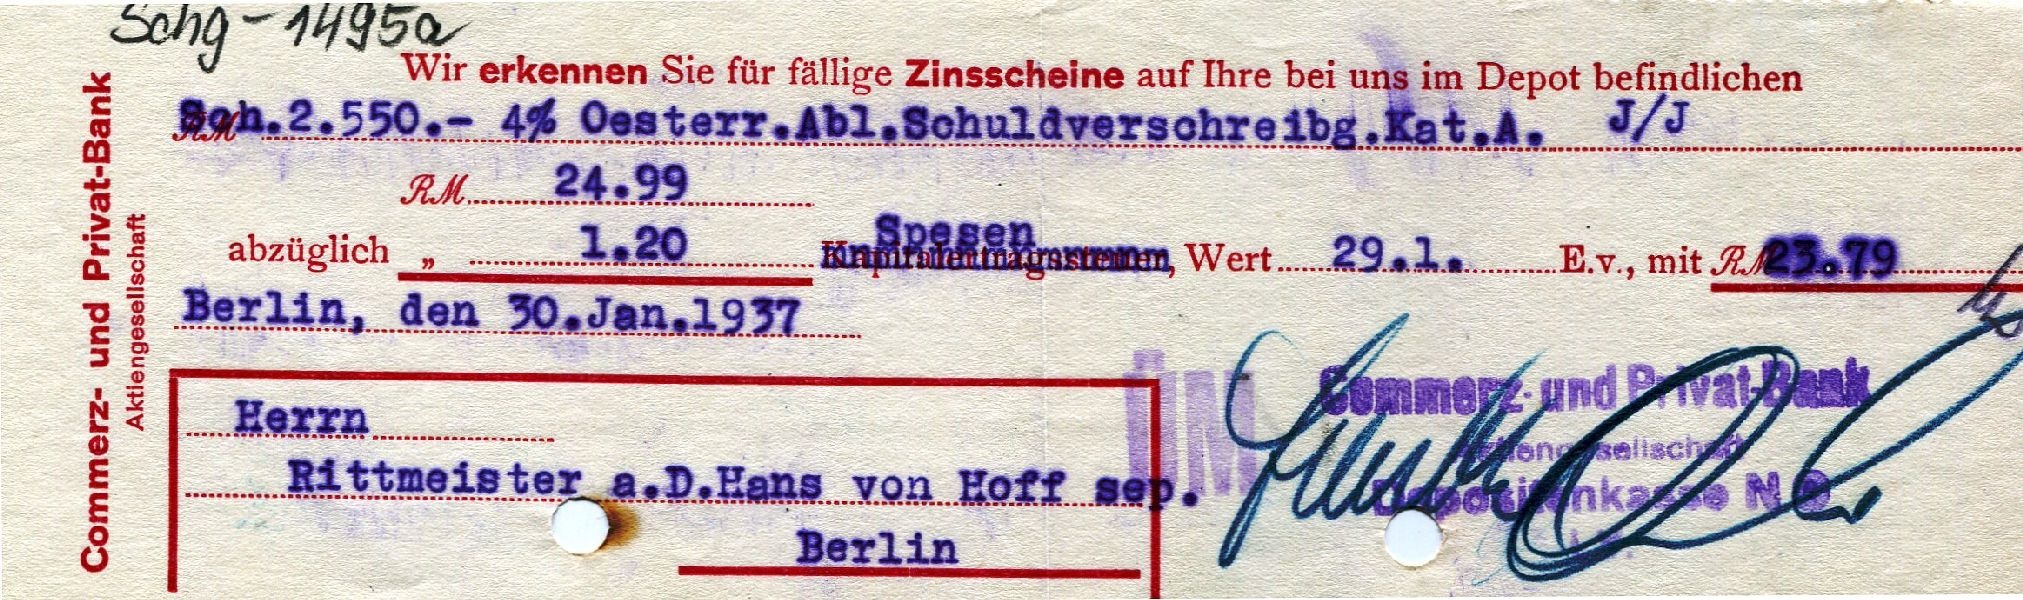 2 Mitteilungen der Commerzbank an Hans von Hoff bezüglich Zinsen (Schloß Wernigerode GmbH RR-F)